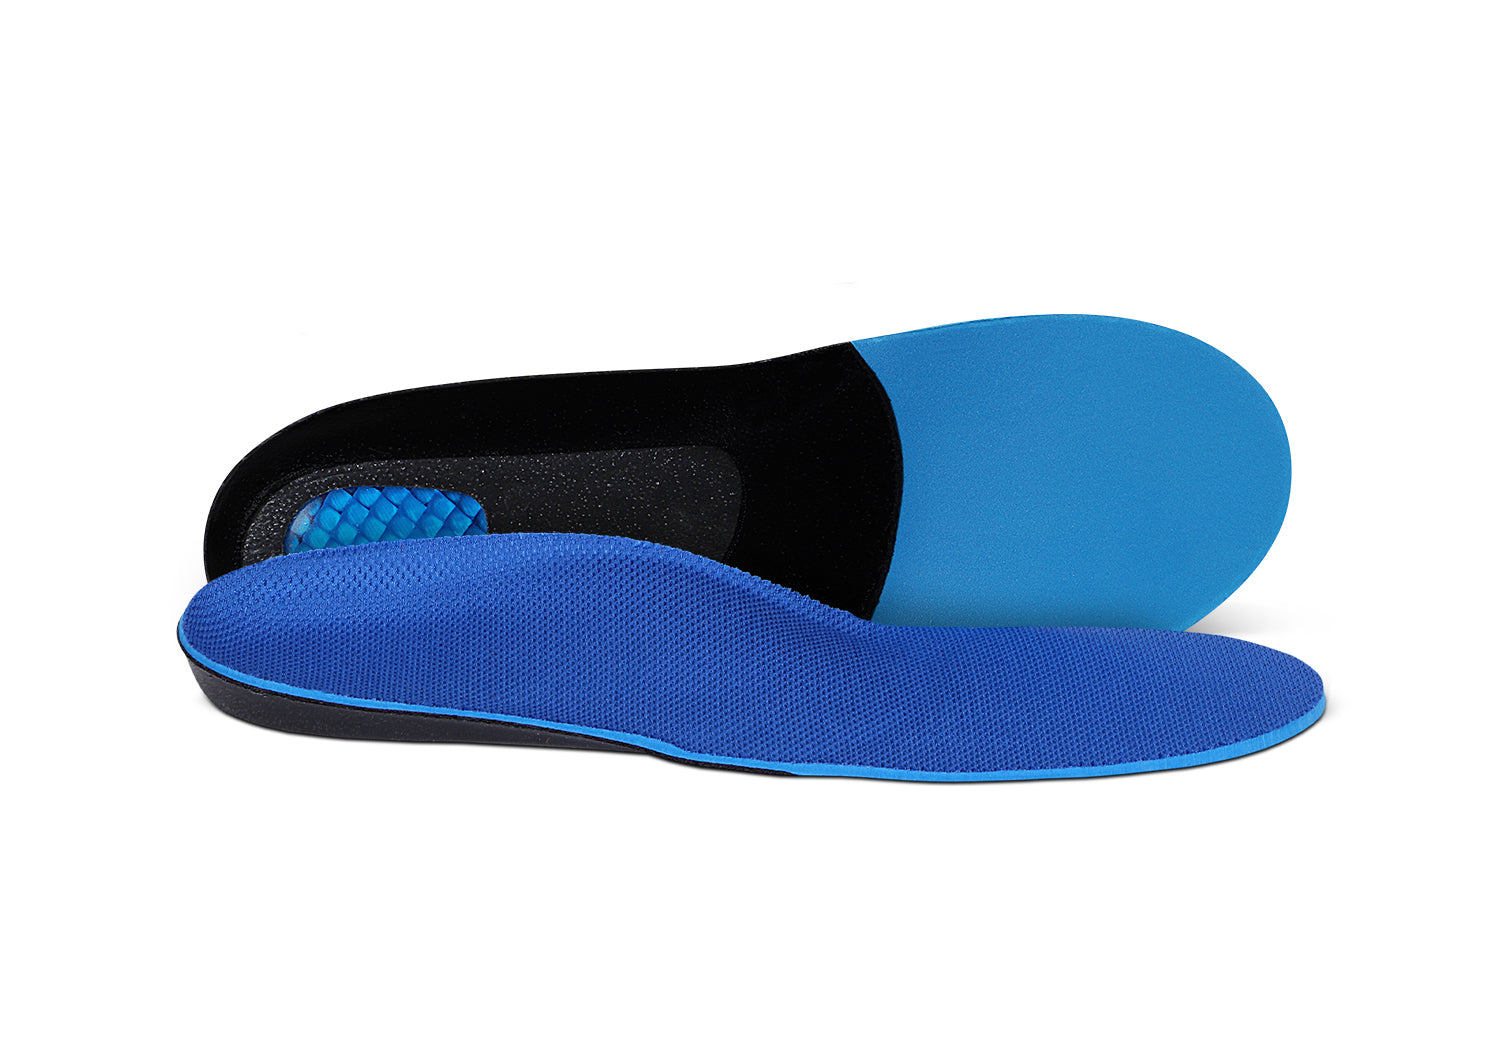 Women's Insoles Plantar Fasciitis Shoe Inserts For Flat Feet | Biosole-Gel